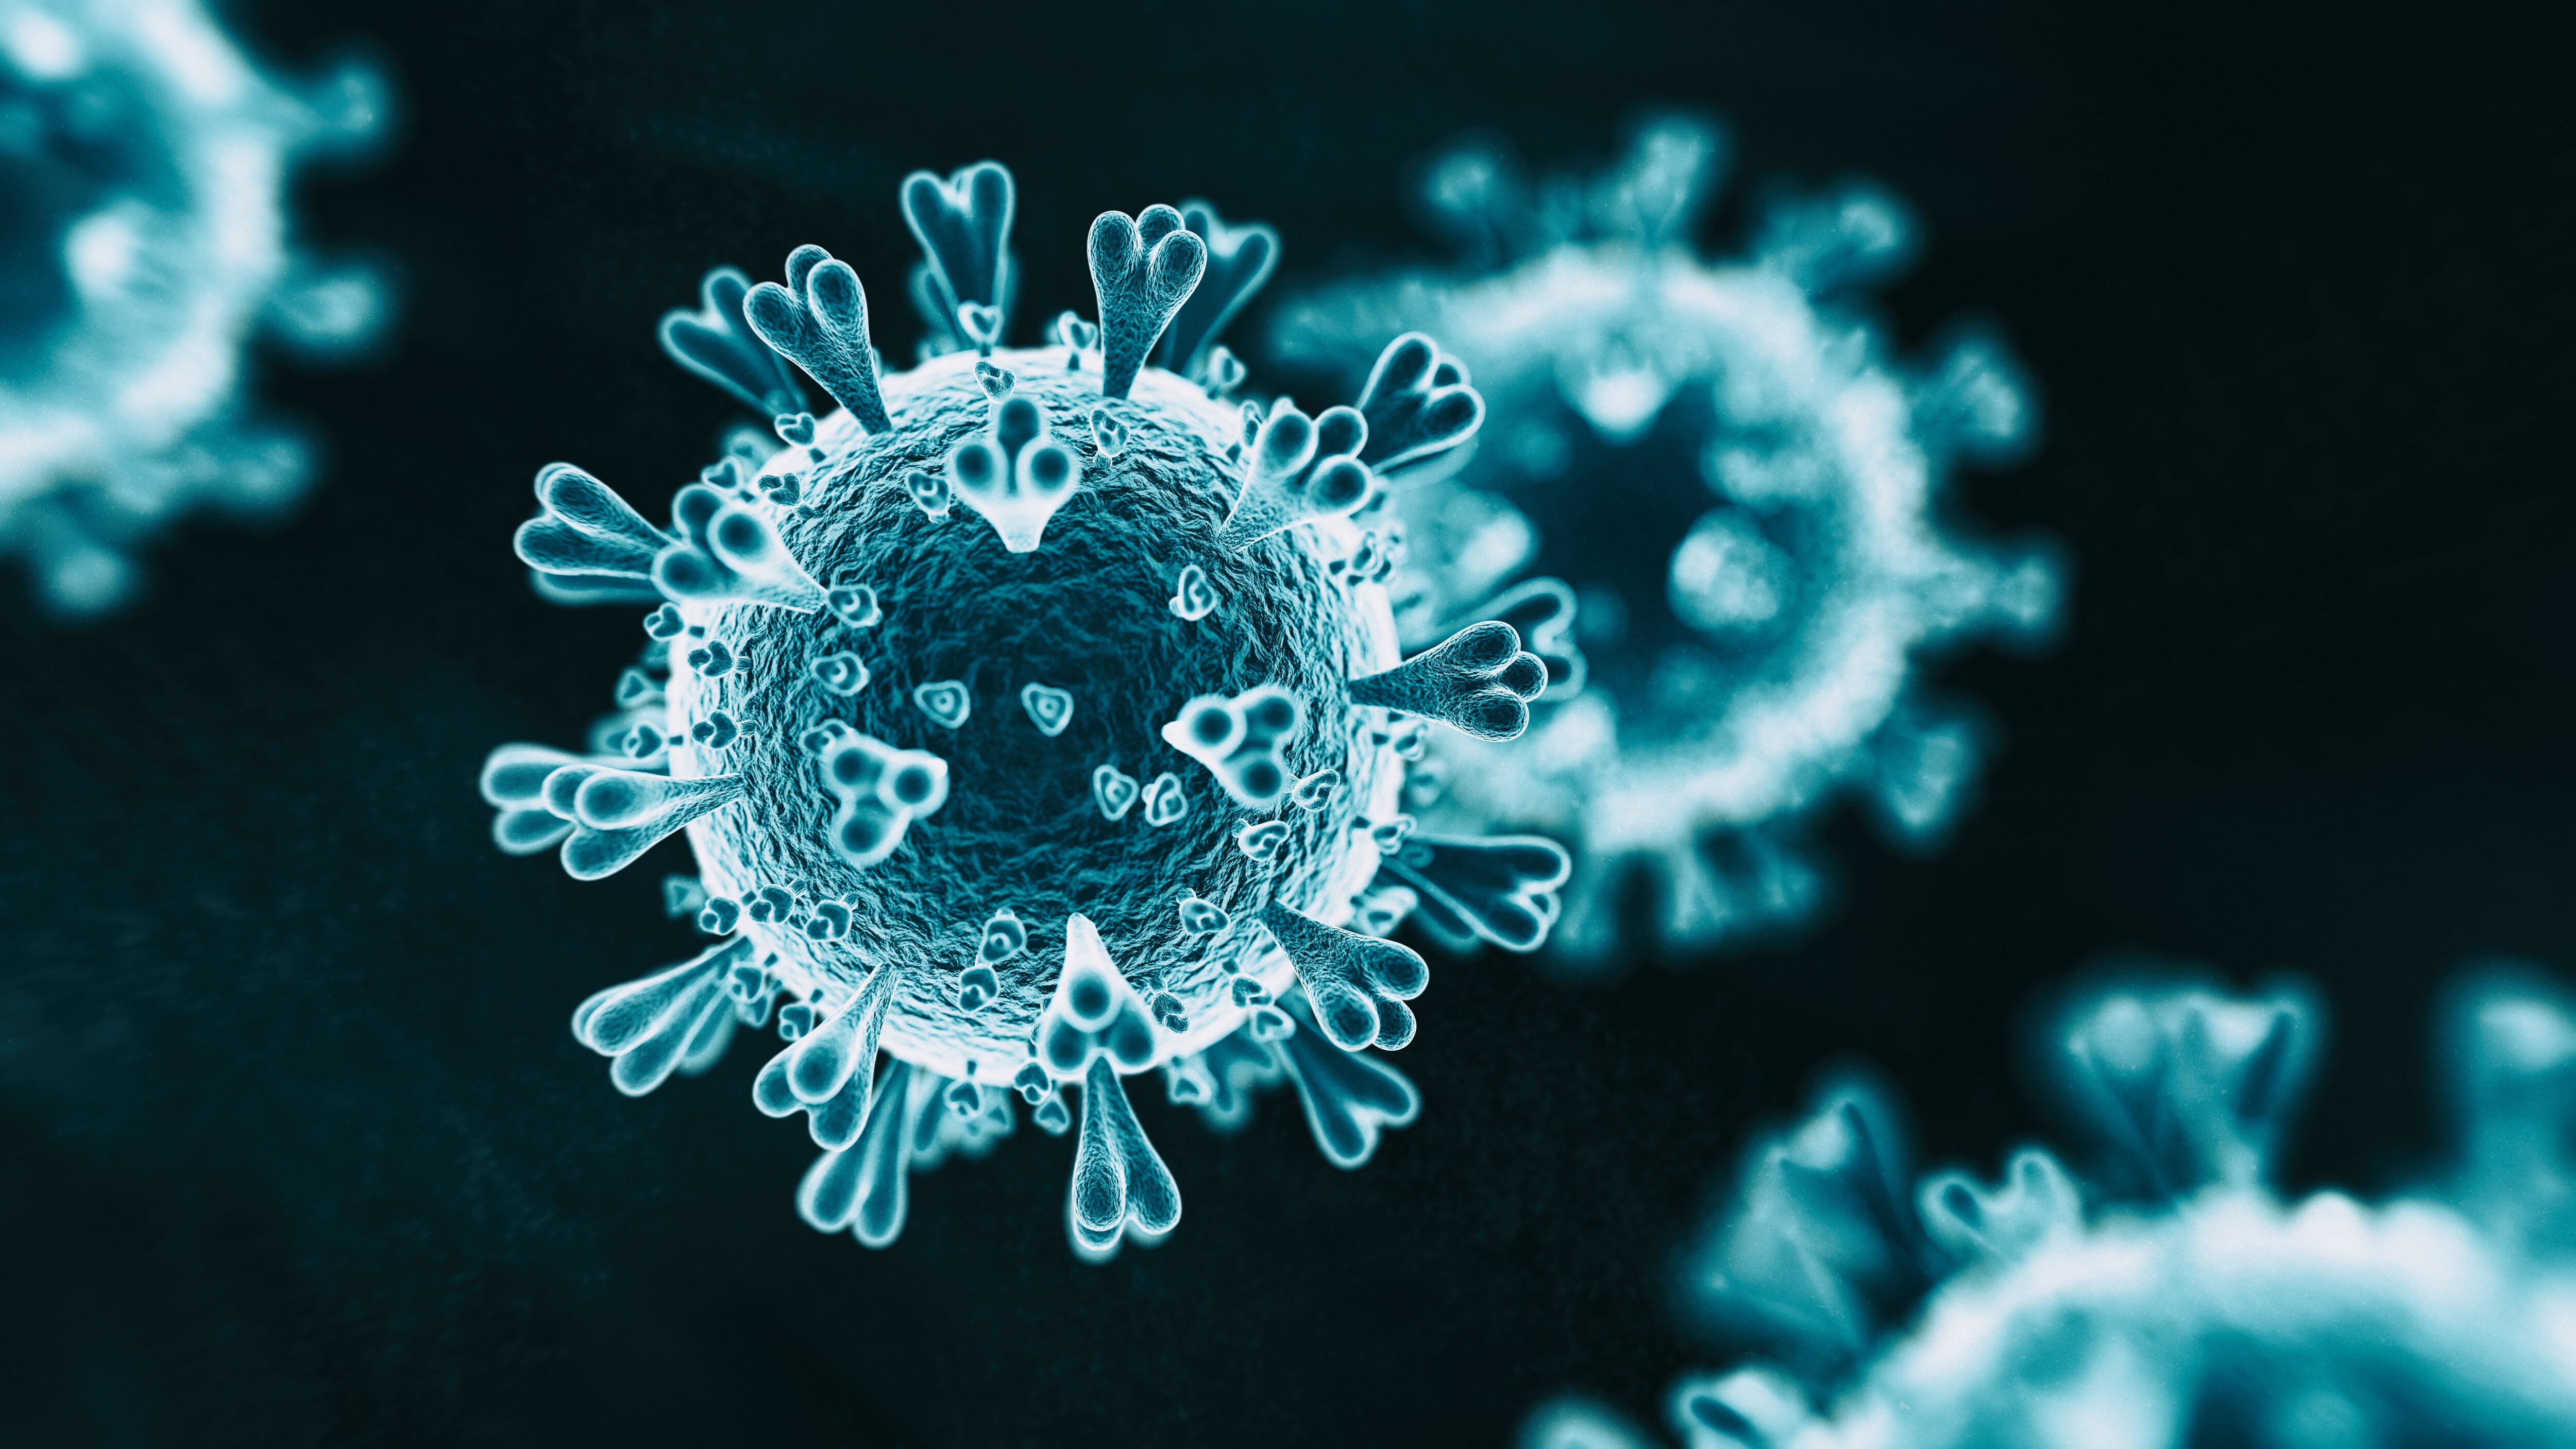 istock-corona-virus.jpg